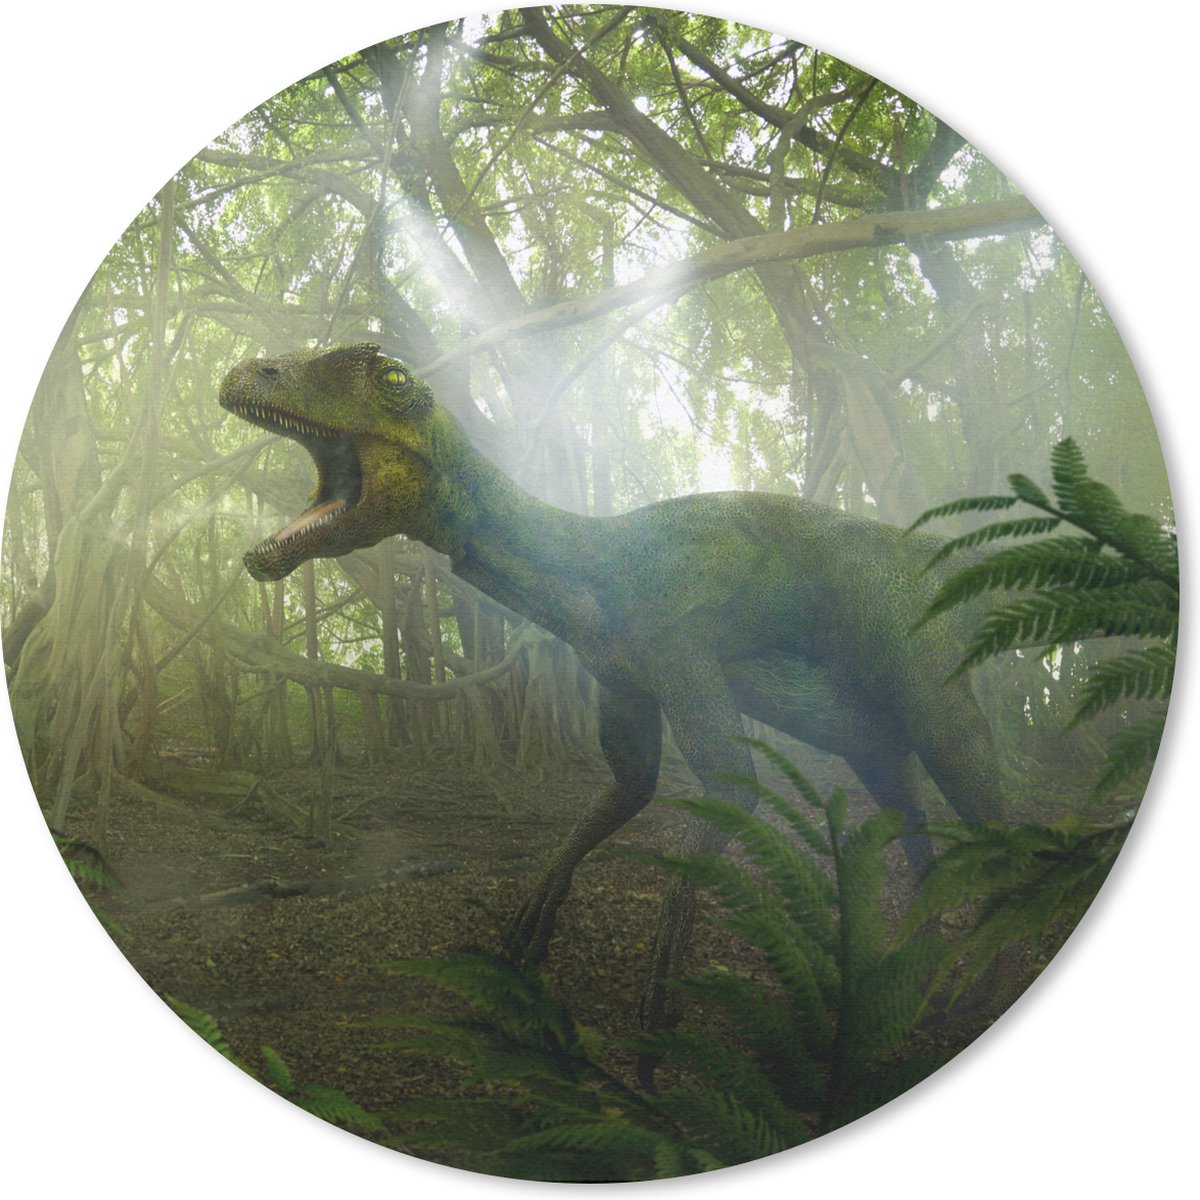 Muismat - Mousepad - Rond - Dinosaurus - Jungle - Planten - 40x40 cm - Ronde muismat